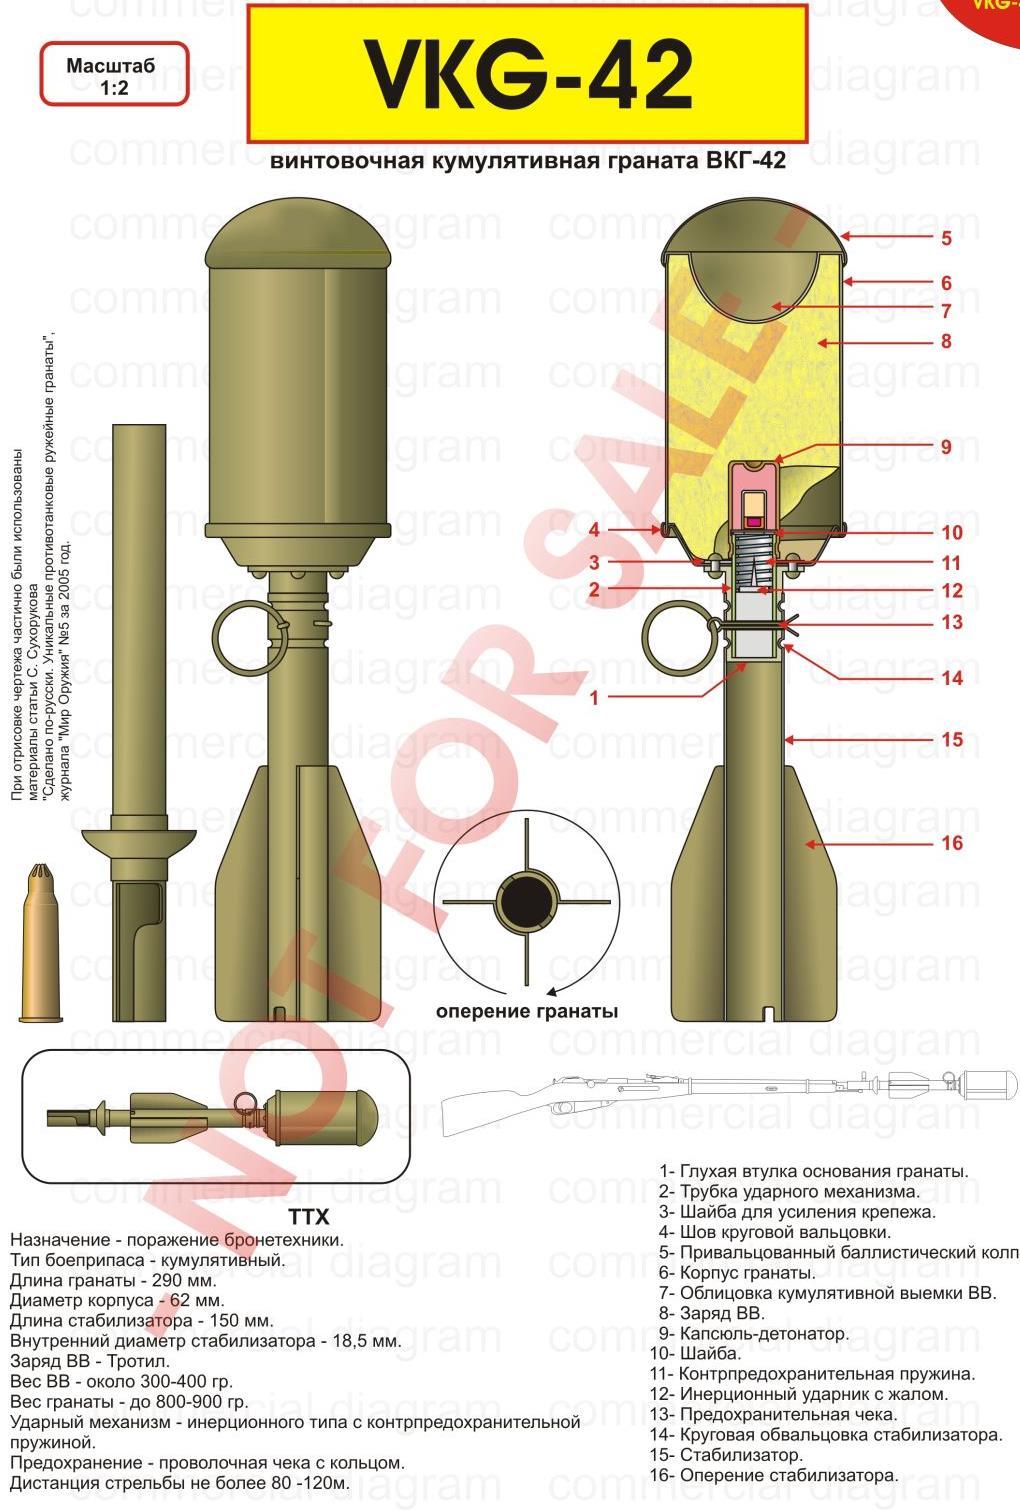 Rifle Grenade VPGS-41 (Ружейная шомпольная граната